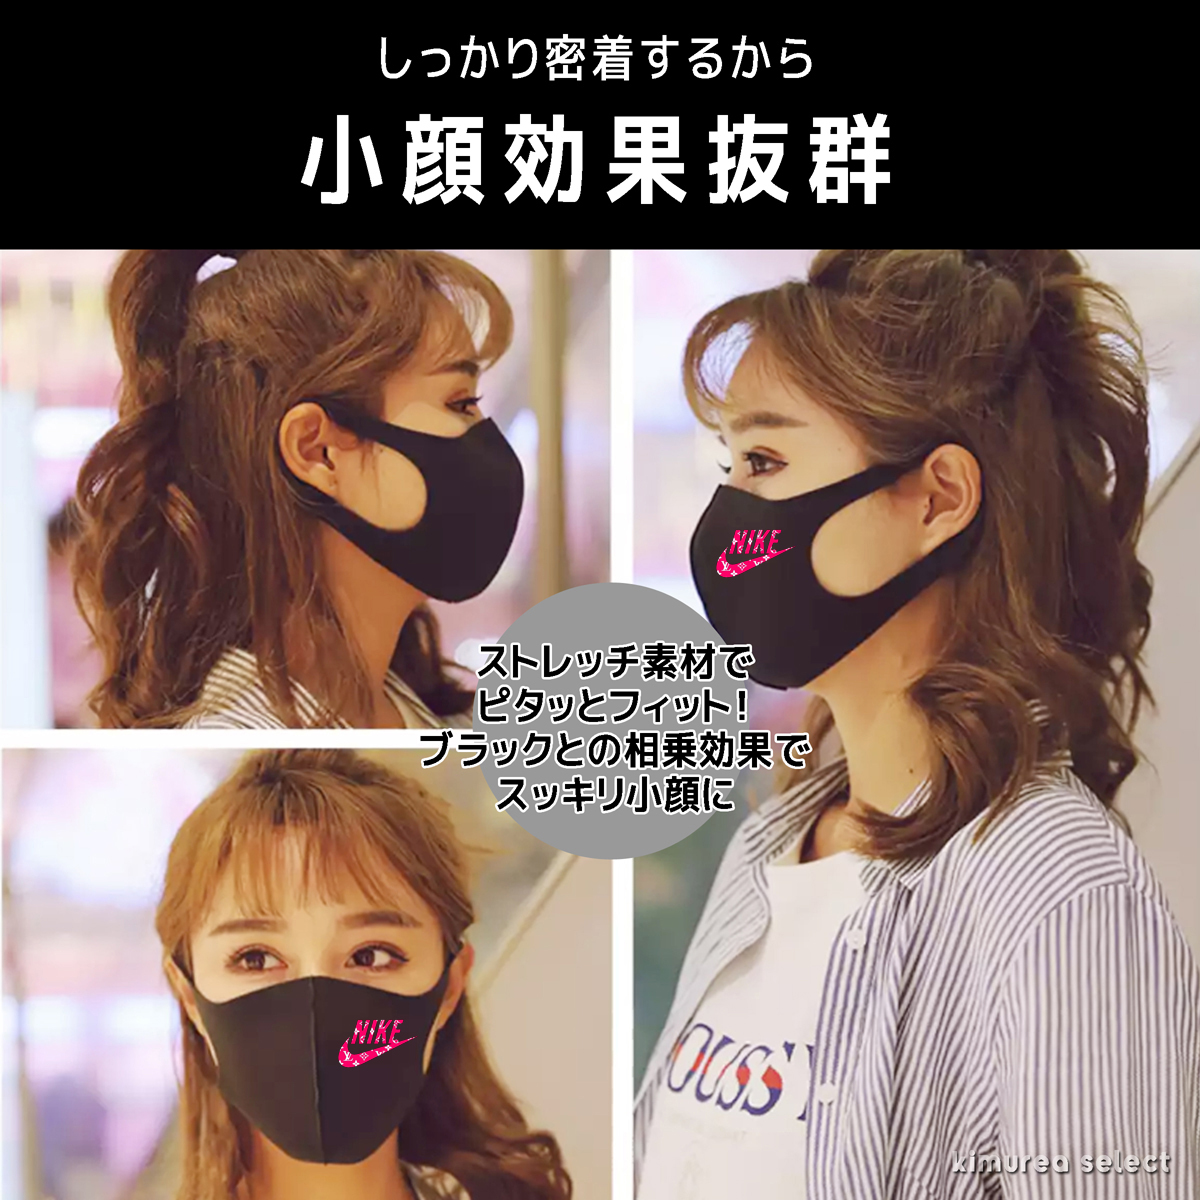 Nike花粉症 ウイルス対策 通勤 通学マスク